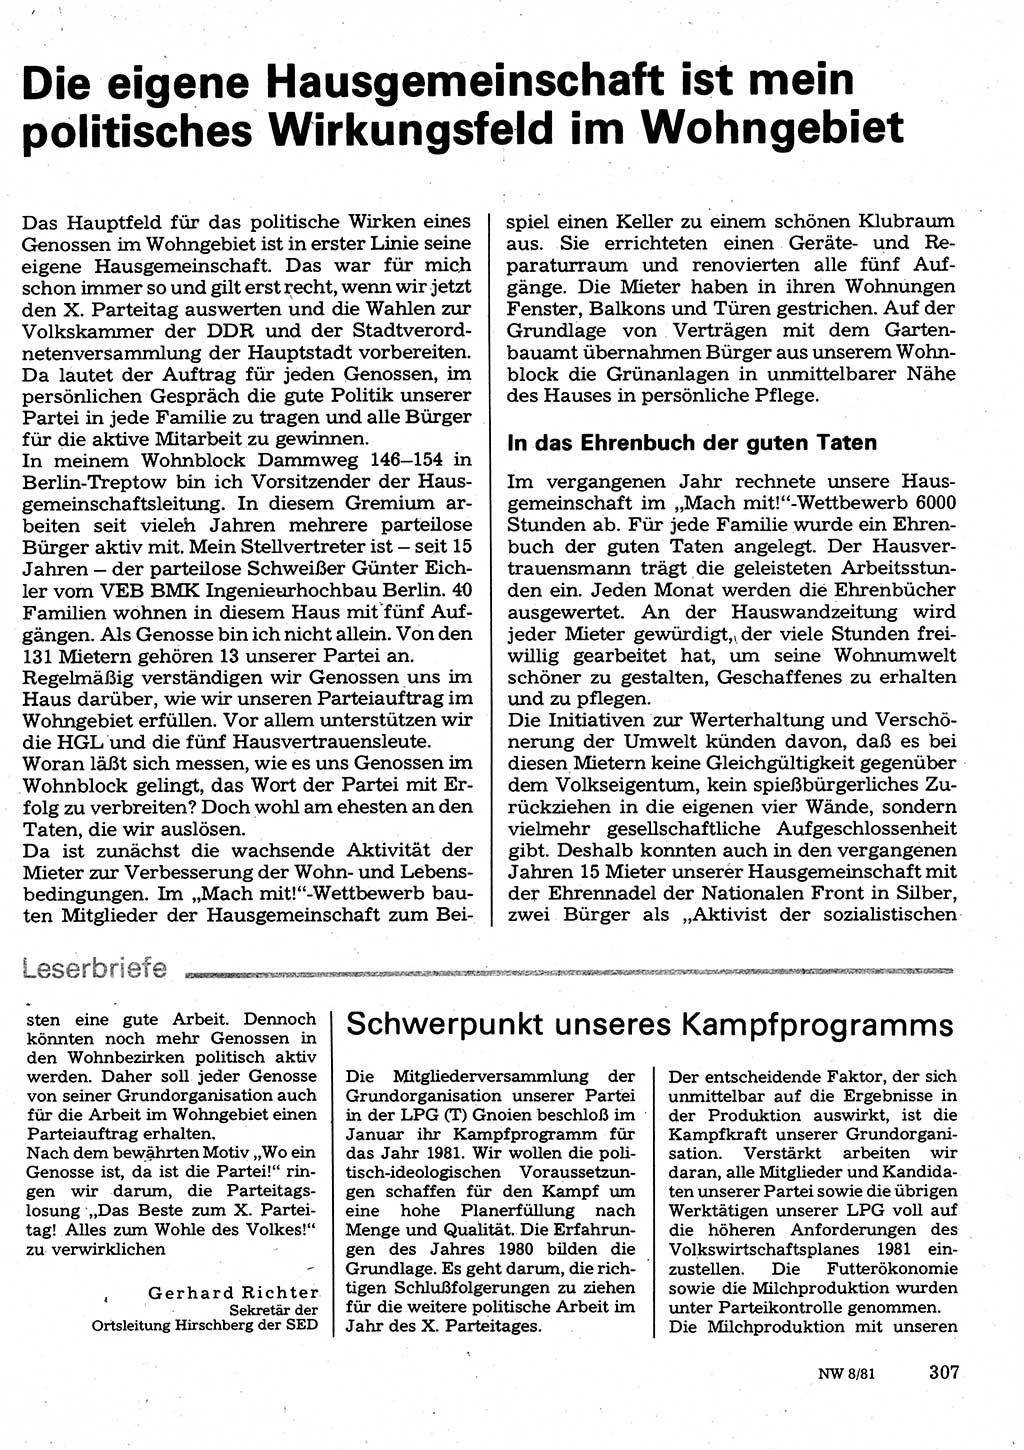 Neuer Weg (NW), Organ des Zentralkomitees (ZK) der SED (Sozialistische Einheitspartei Deutschlands) für Fragen des Parteilebens, 36. Jahrgang [Deutsche Demokratische Republik (DDR)] 1981, Seite 307 (NW ZK SED DDR 1981, S. 307)